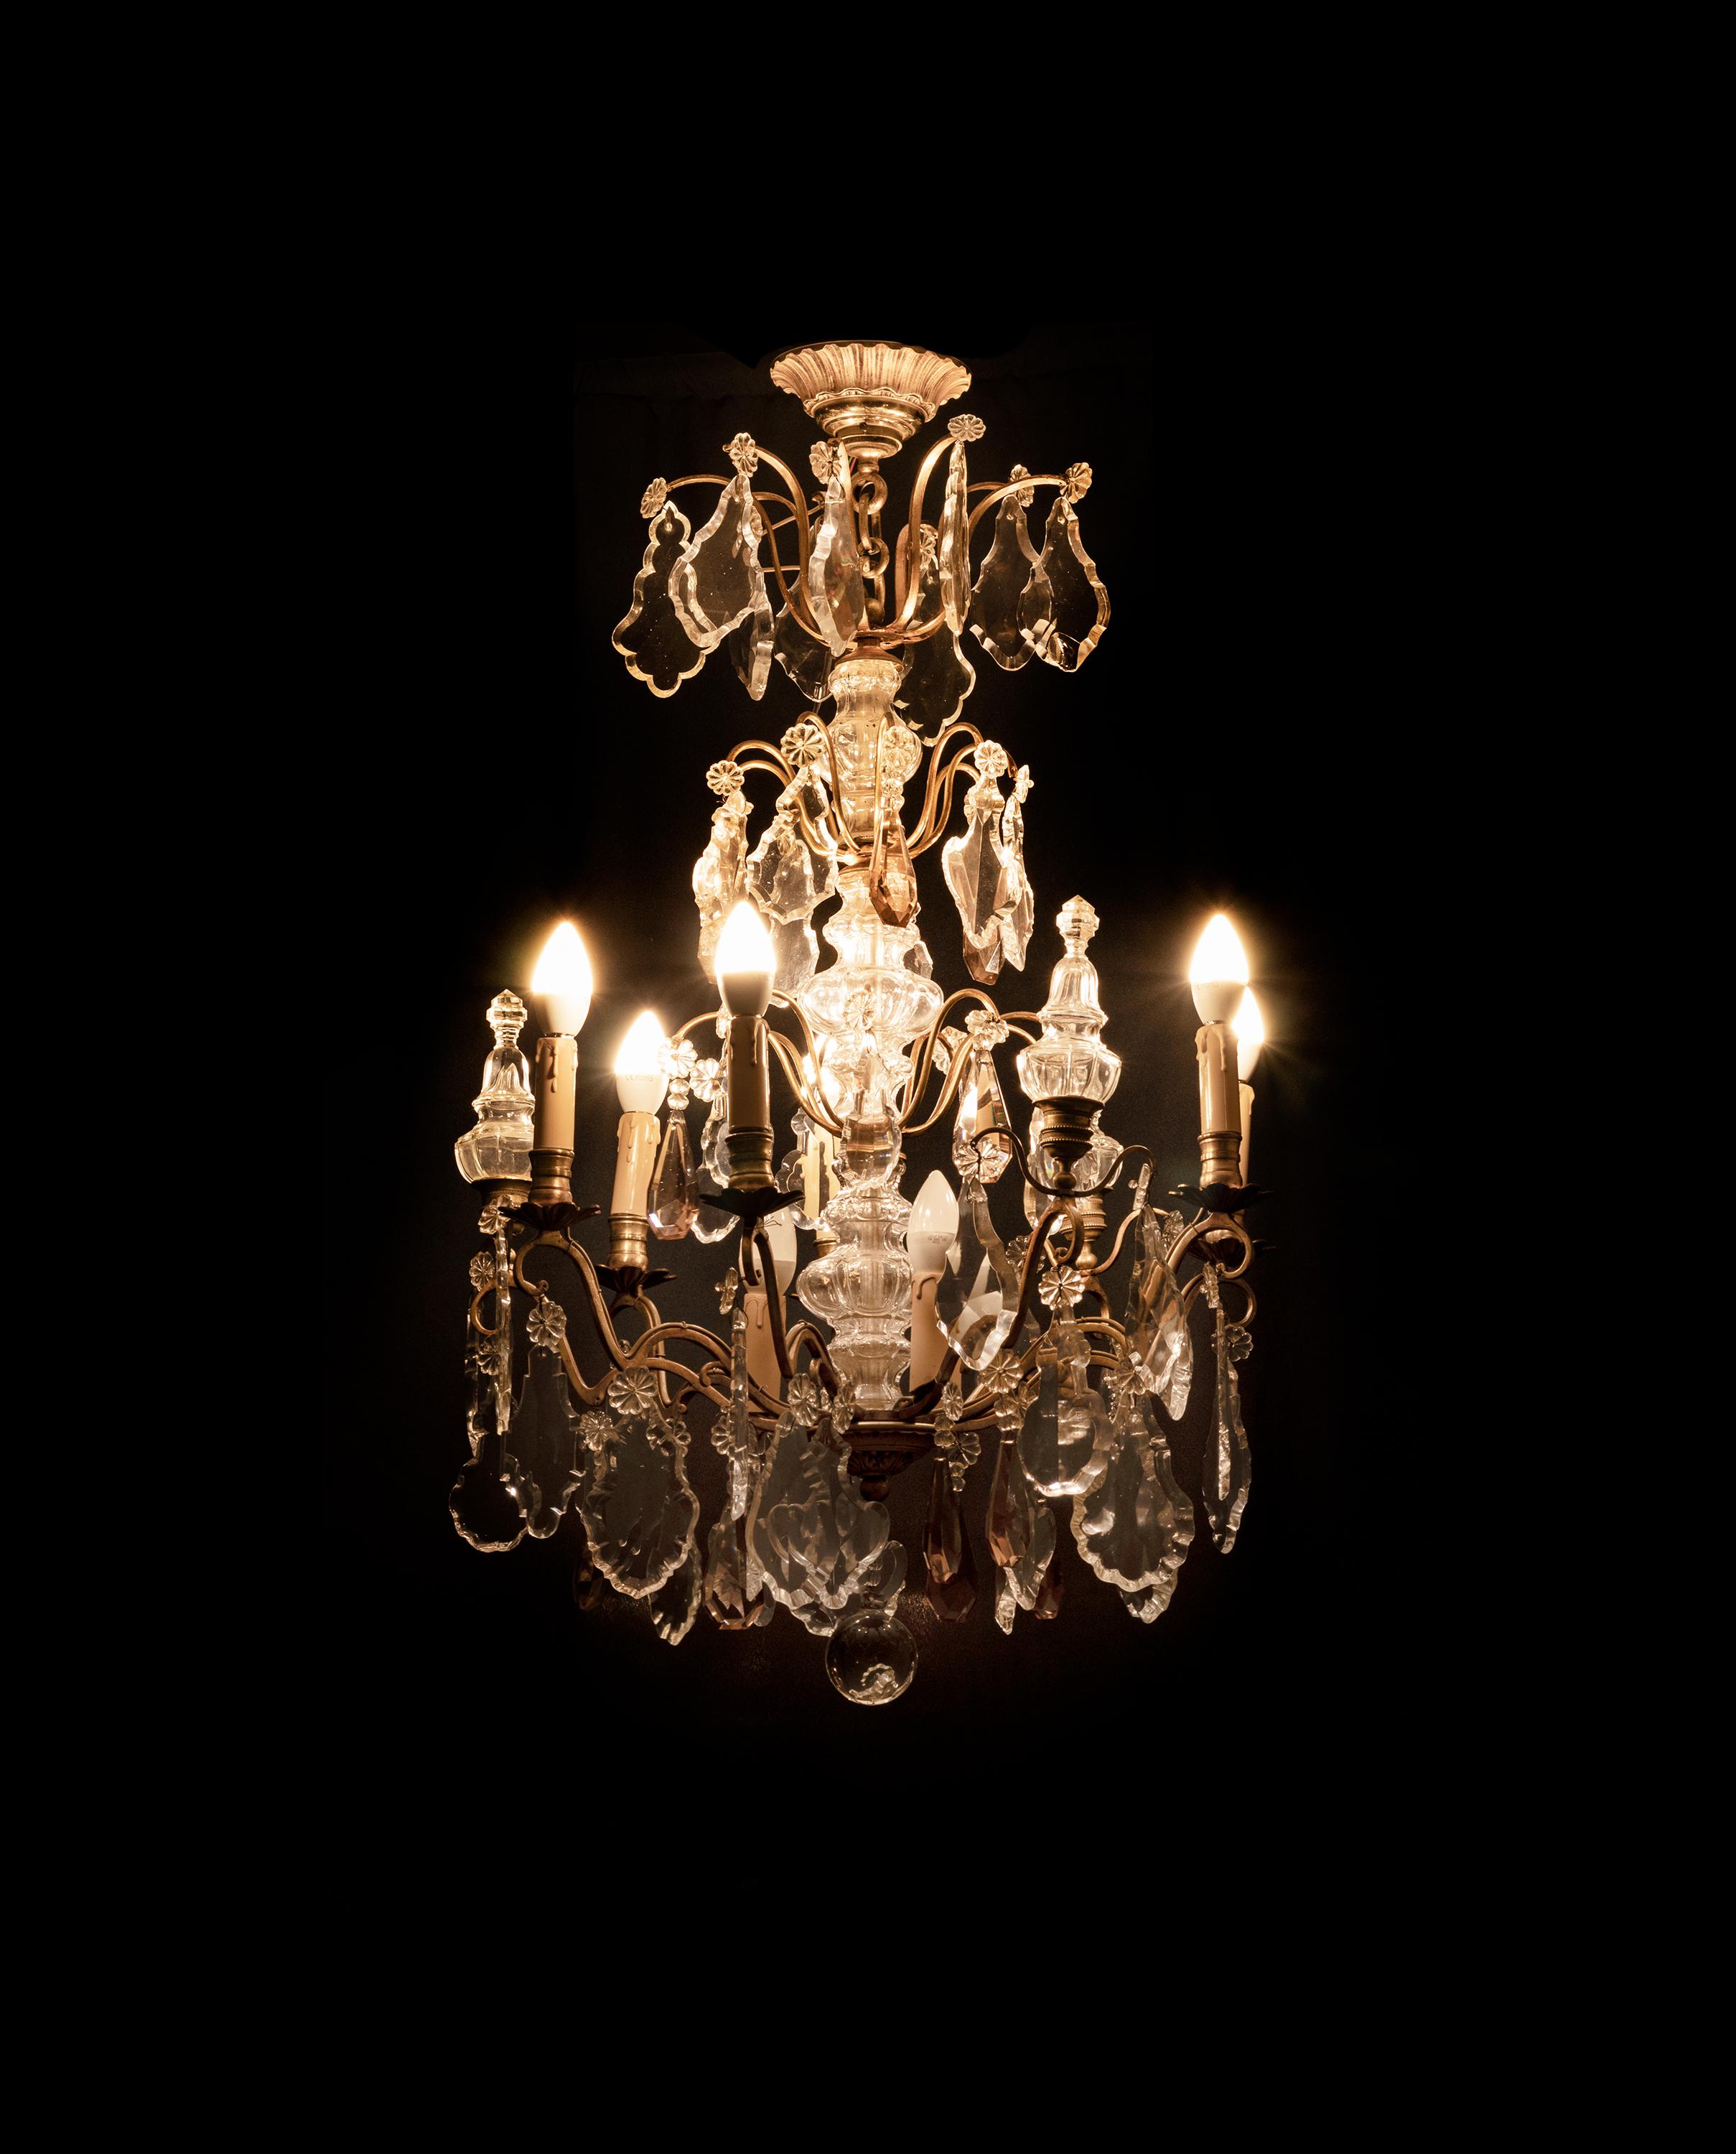  Bronze-Kronleuchter im Louis-XV-Stil mit Kristallanhängern und Endstücken
und getöntem Glas, vervollständigt und neu verkabelt mit Kerzenhaltern und neun Lichtsteckdosen.

Der Kronleuchter ist derzeit sowohl für LED-Leuchten nach EU- als auch nach